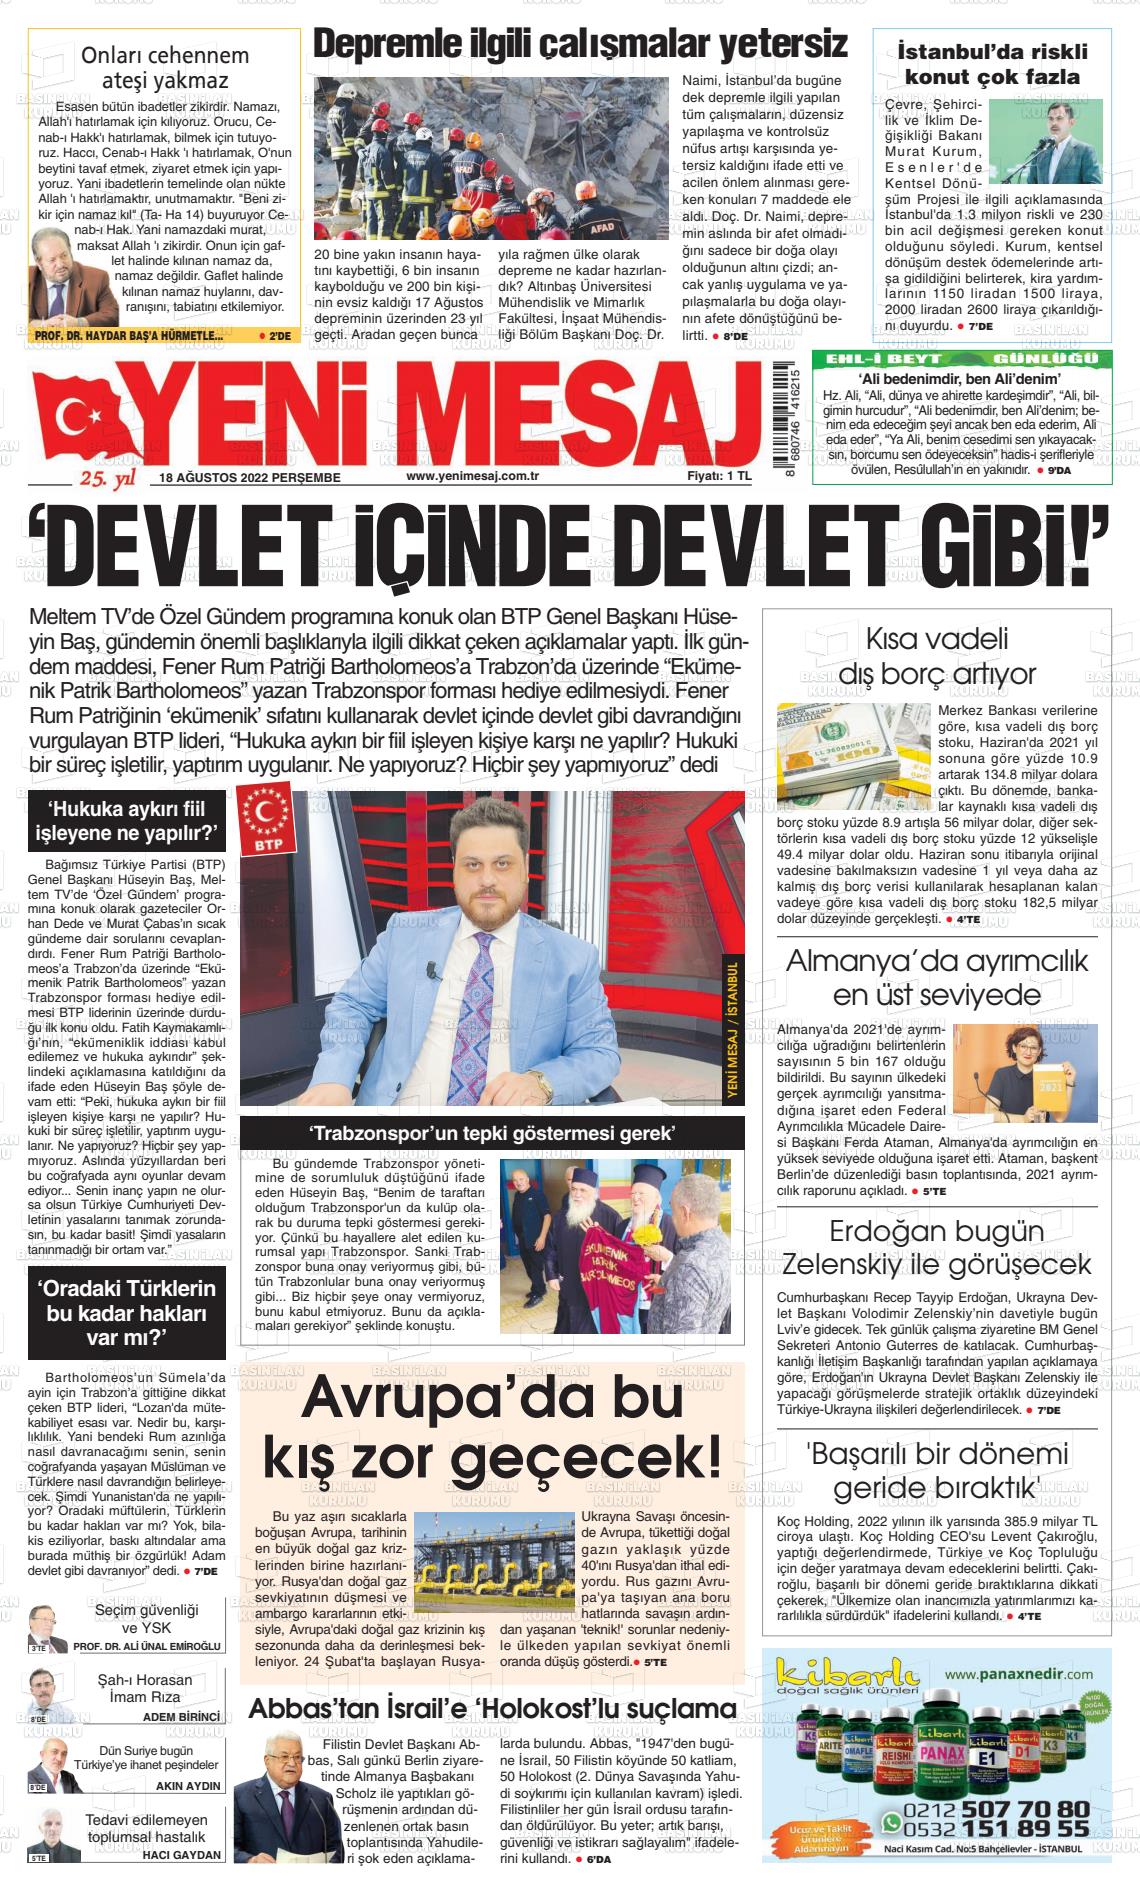 18 Ağustos 2022 Yeni Mesaj Gazete Manşeti